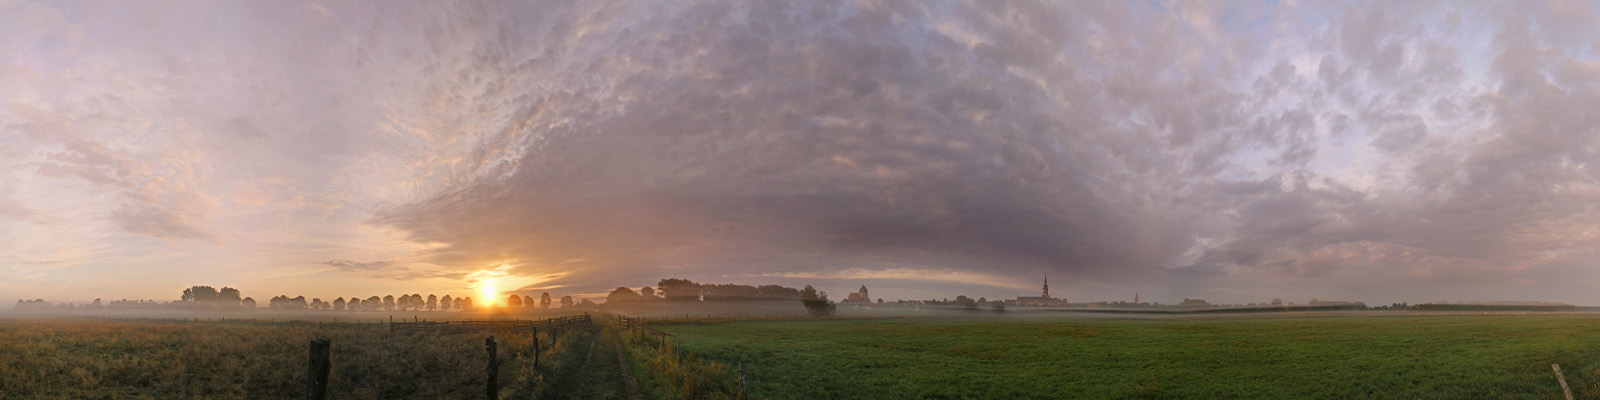 Panorama: Sonnenaufgang über den Wiesen bei Greifswald - Motivnummer: hgw-cdf-04